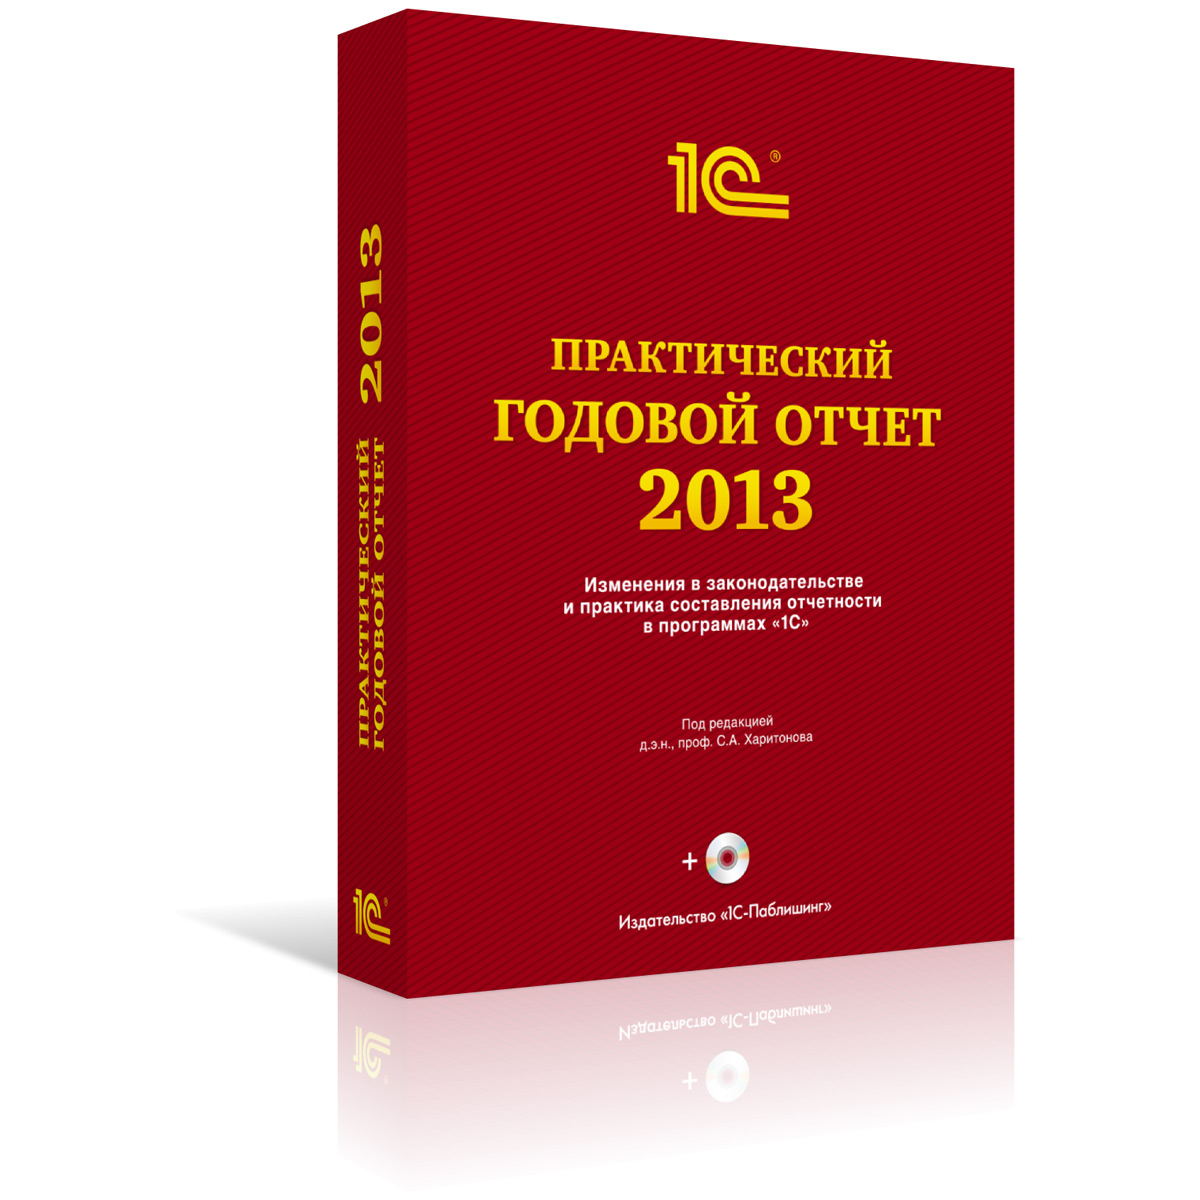 Практический годовой отчет за 2013 год от фирмы 